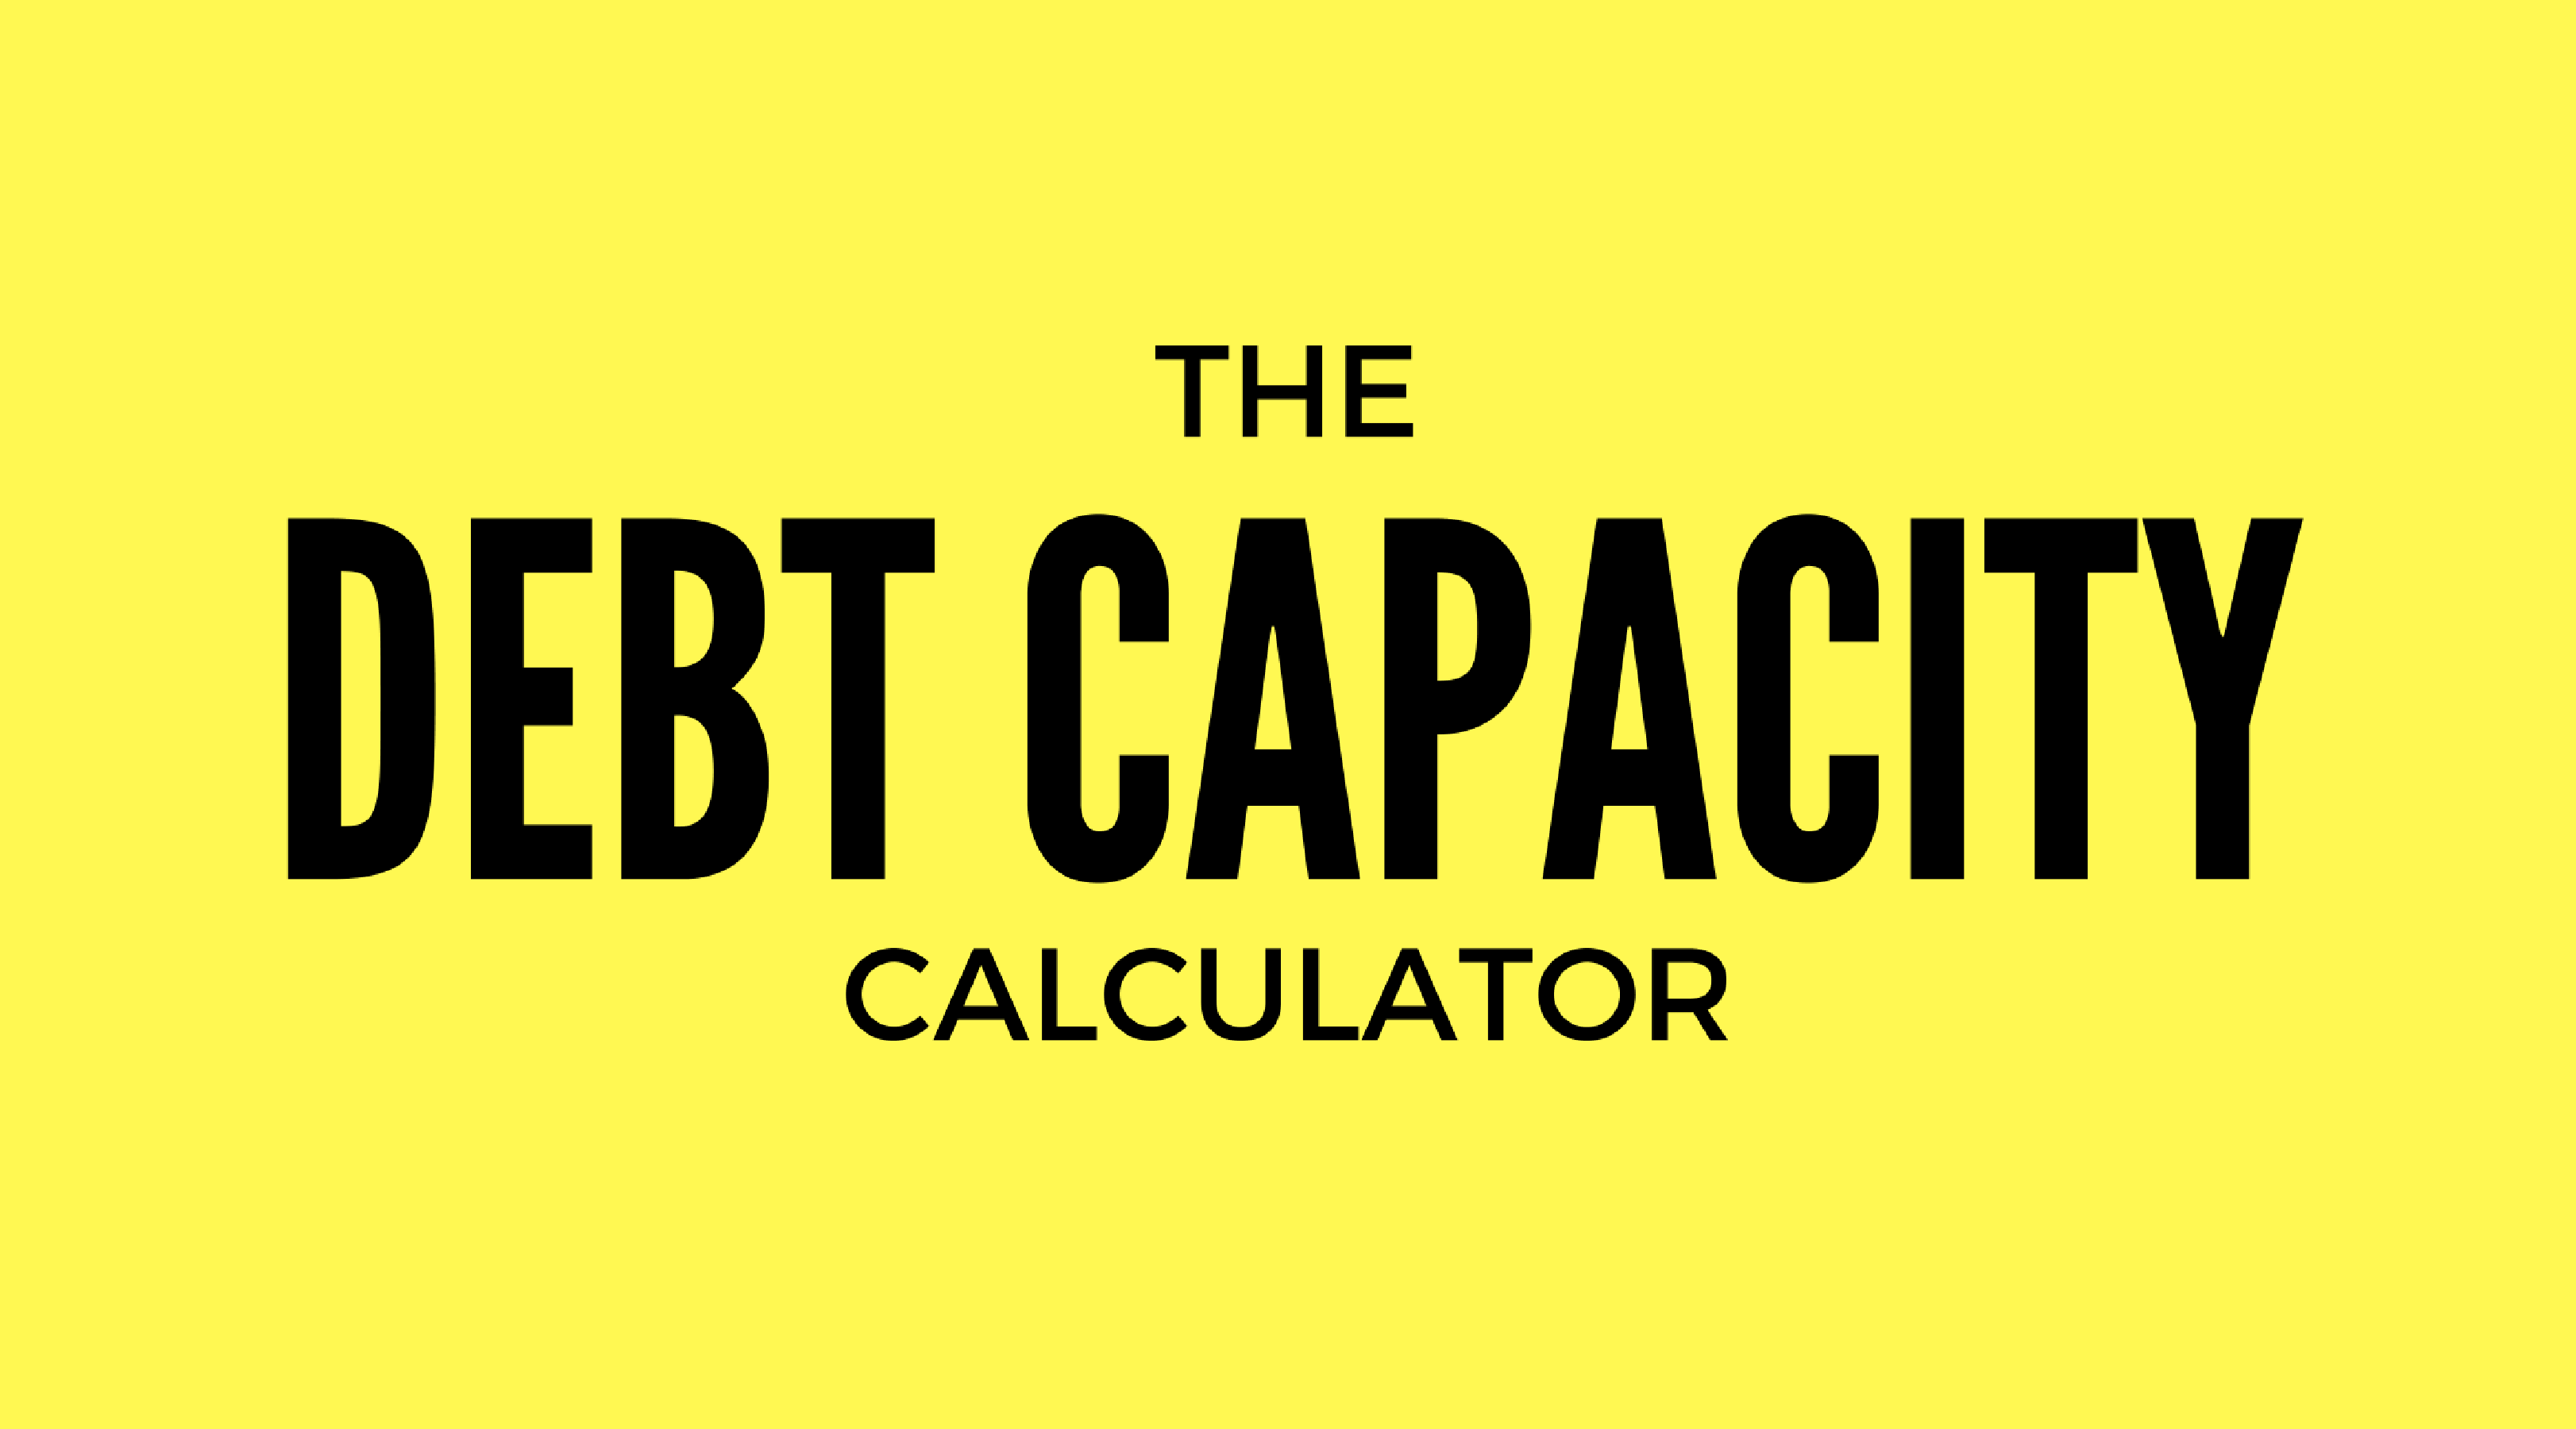 Debt capacity calculator